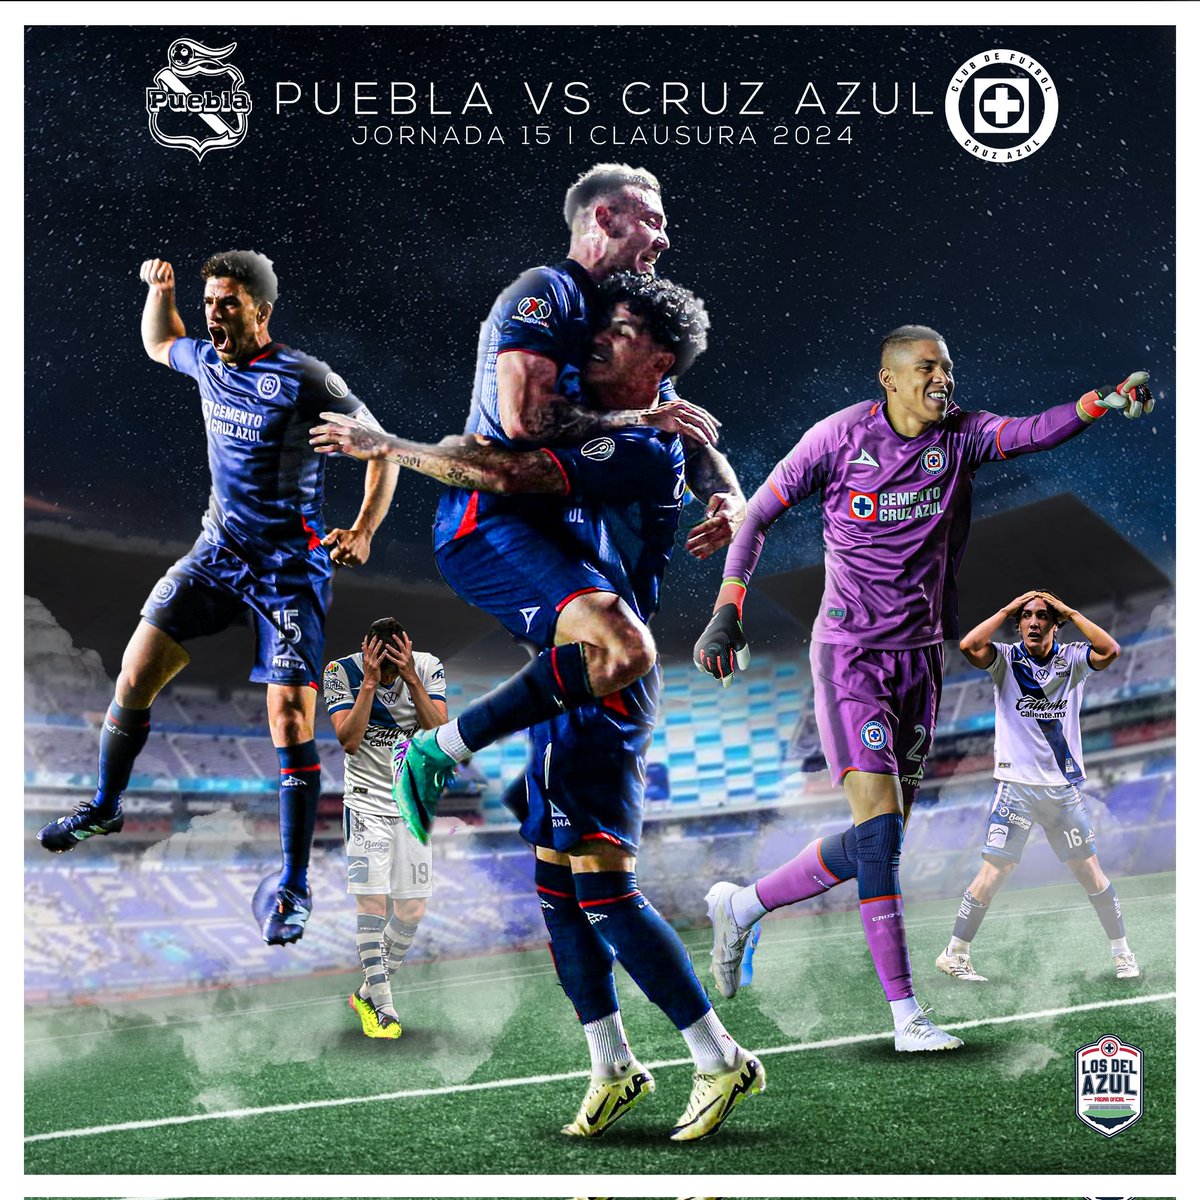 POR UN GRAN CIERRE Recta final del torneo; viernes de gala, viernes de visitar Puebla y regresar a casa con los 3 puntos. Viernes de ver al glorioso #CruzAzul 🚂 #LosDelAzul